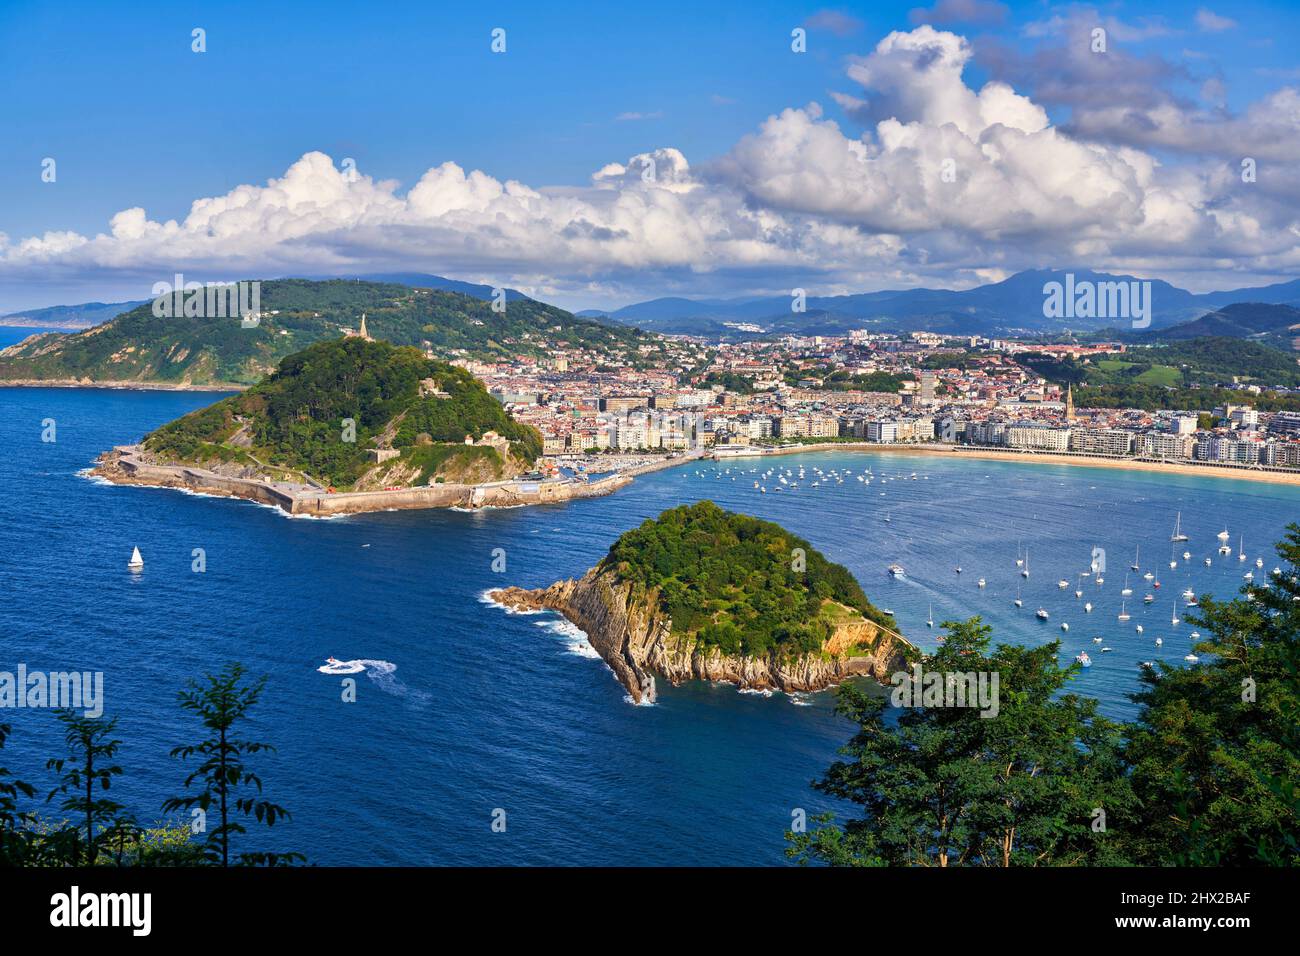 Vista de la Bahía de La Concha desde el Monte Igeldo, la Isla de Santa Clara y el Monte Urgull, Donostia, San Sebastián, ciudad cosmopolita de 187.000 habitantes, Foto de stock